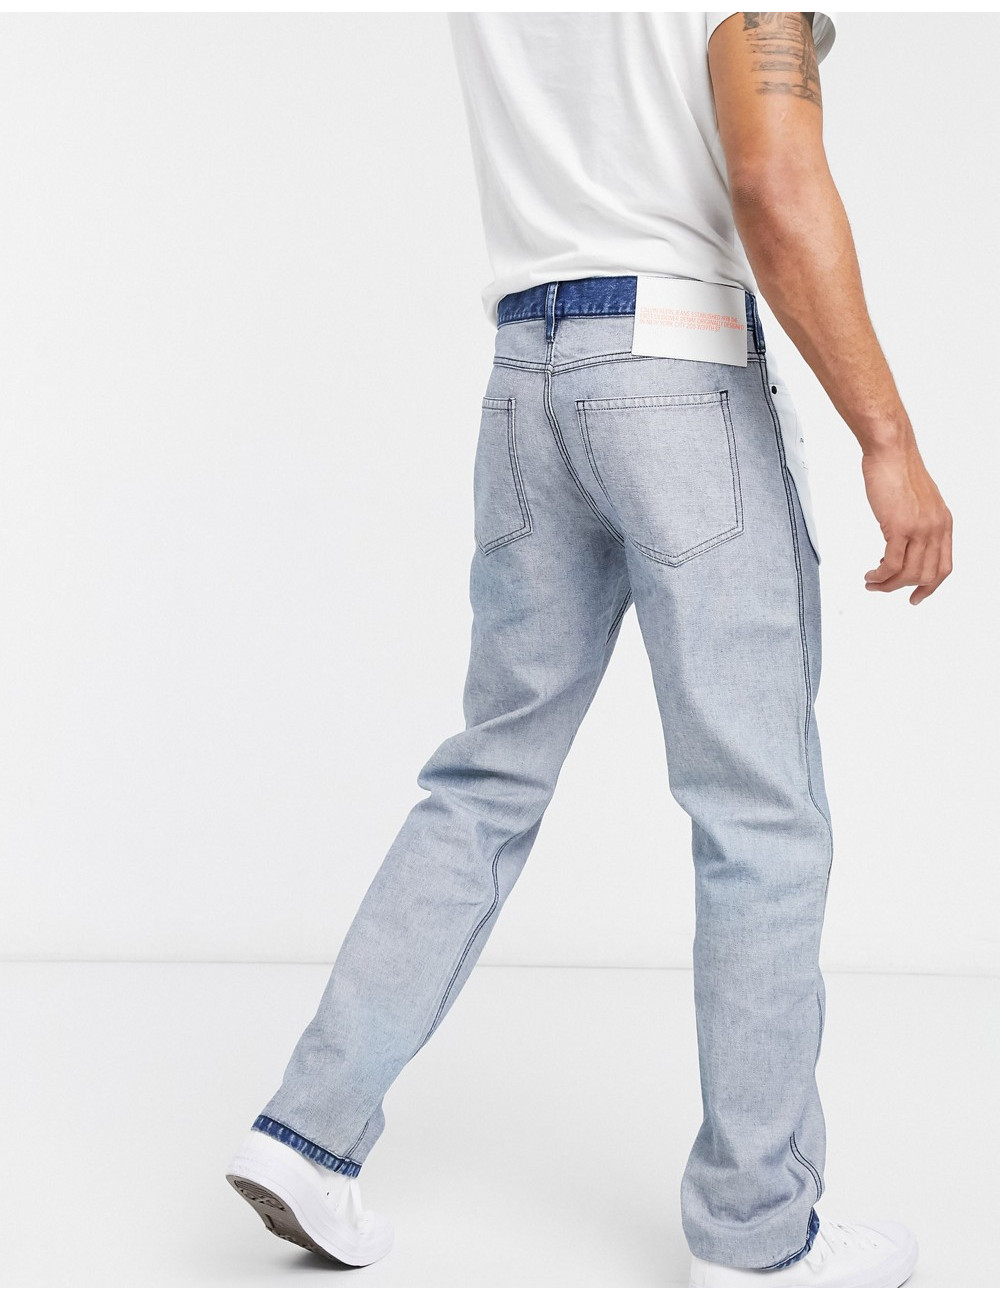 Calvin Klein Jeans...